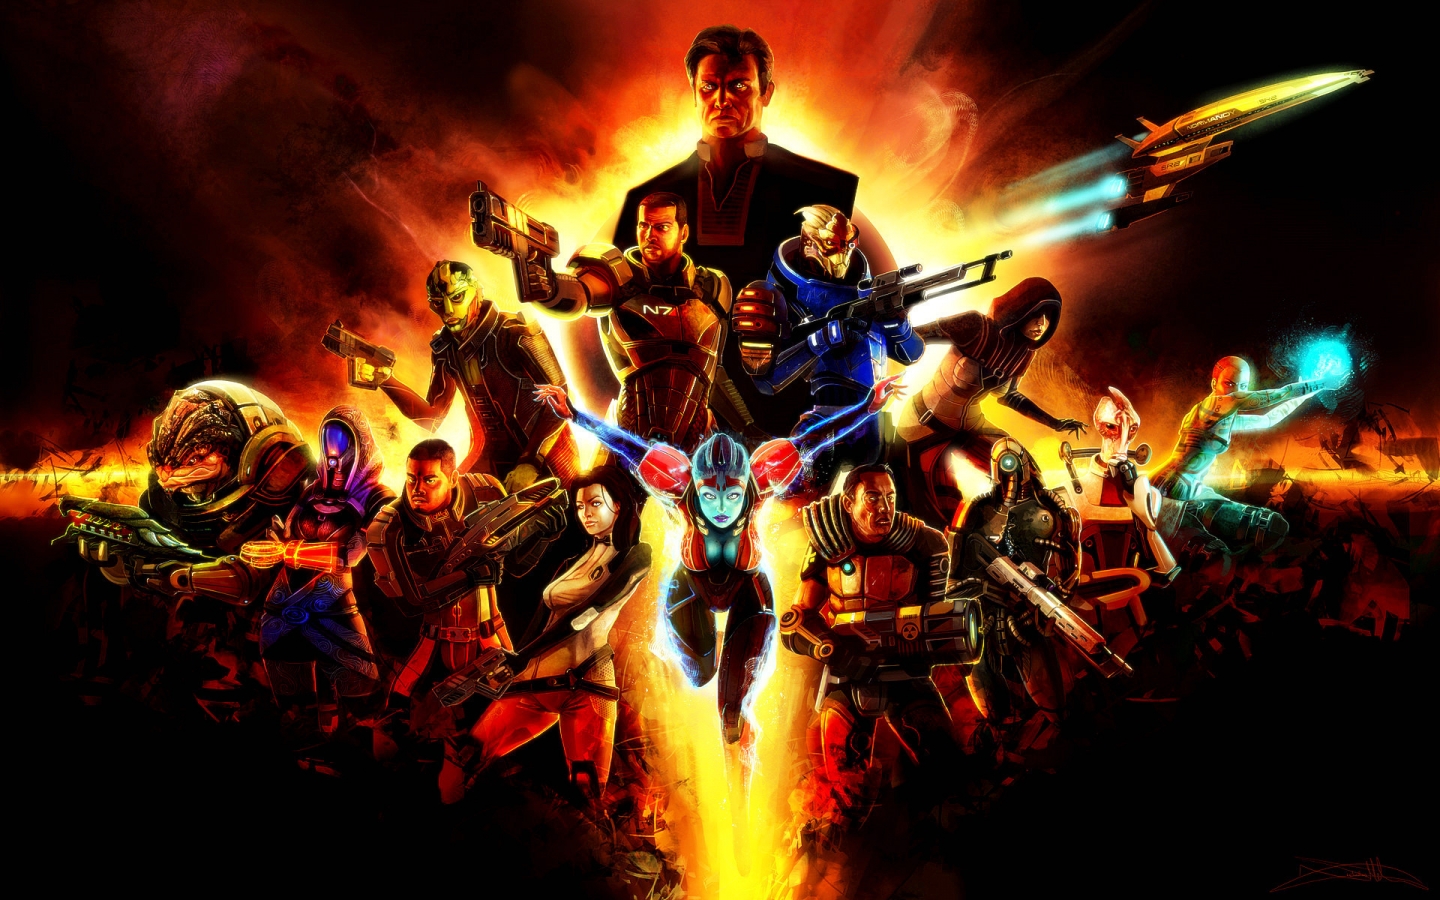 Mass Effect 2 Poster for 1440 x 900 widescreen resolution